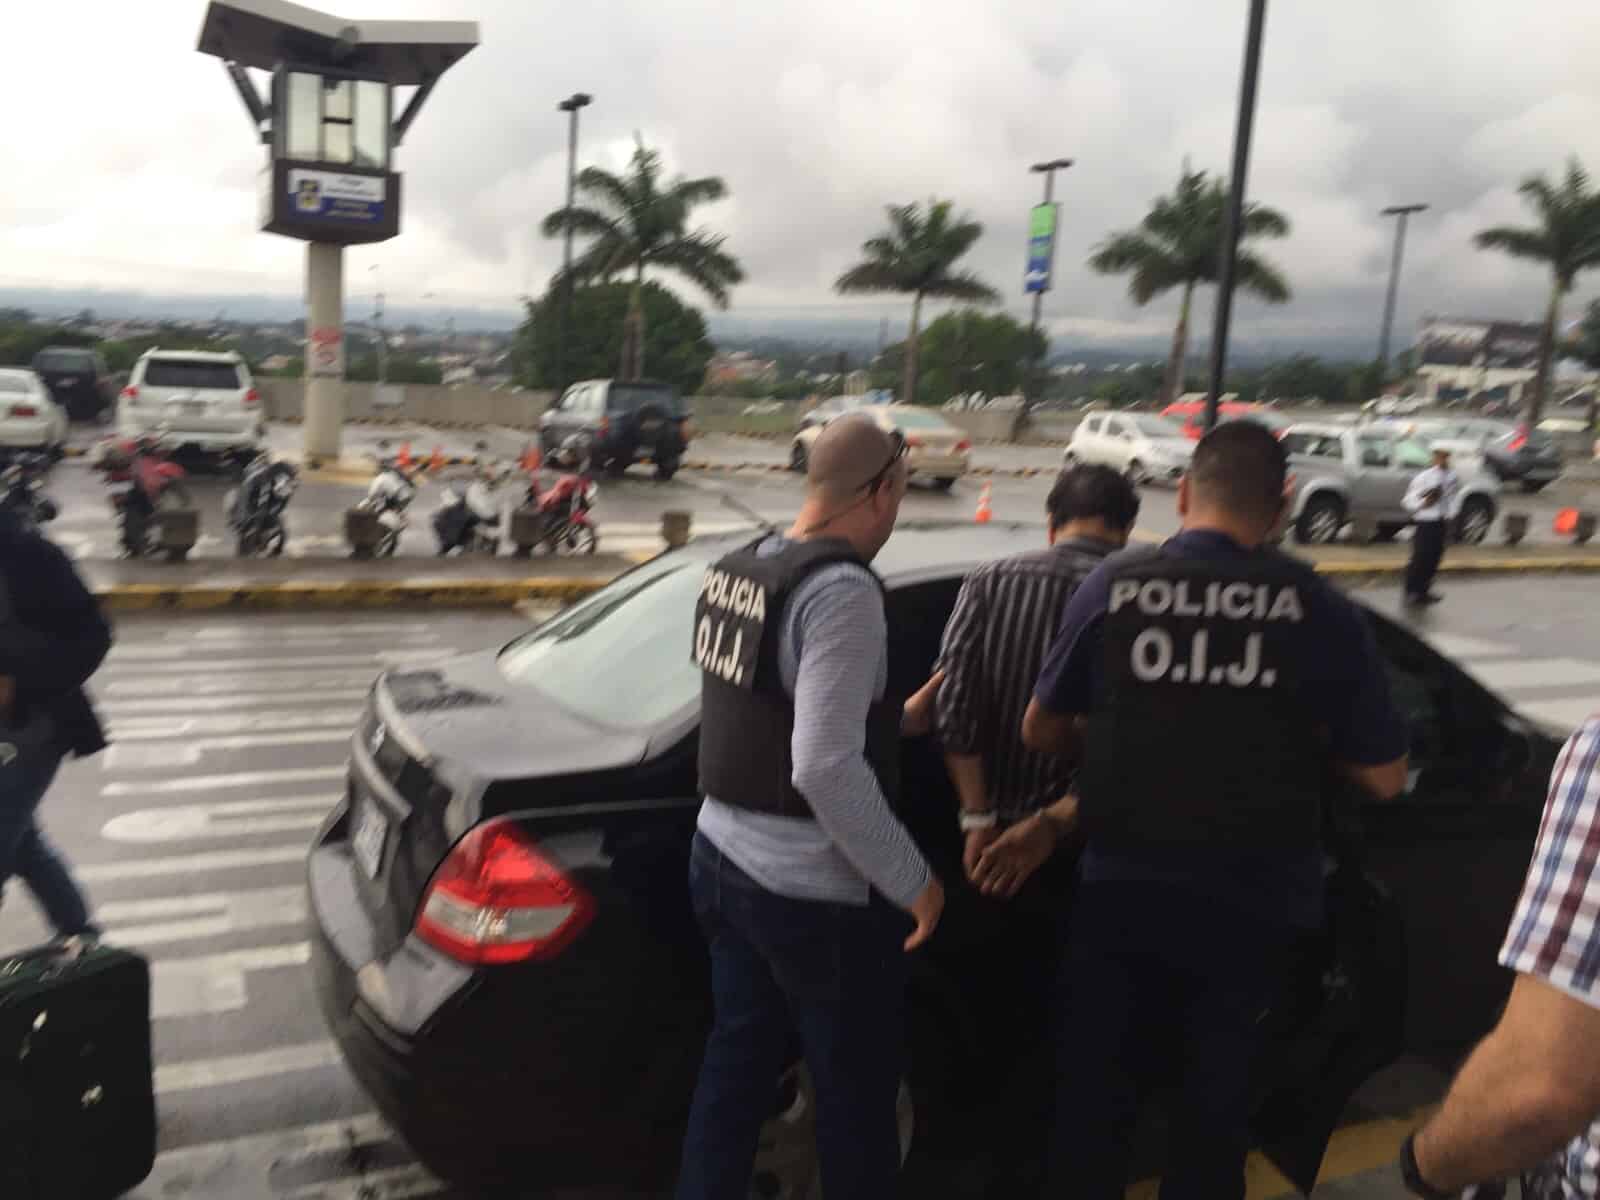 Costa Rica rape suspect arrested